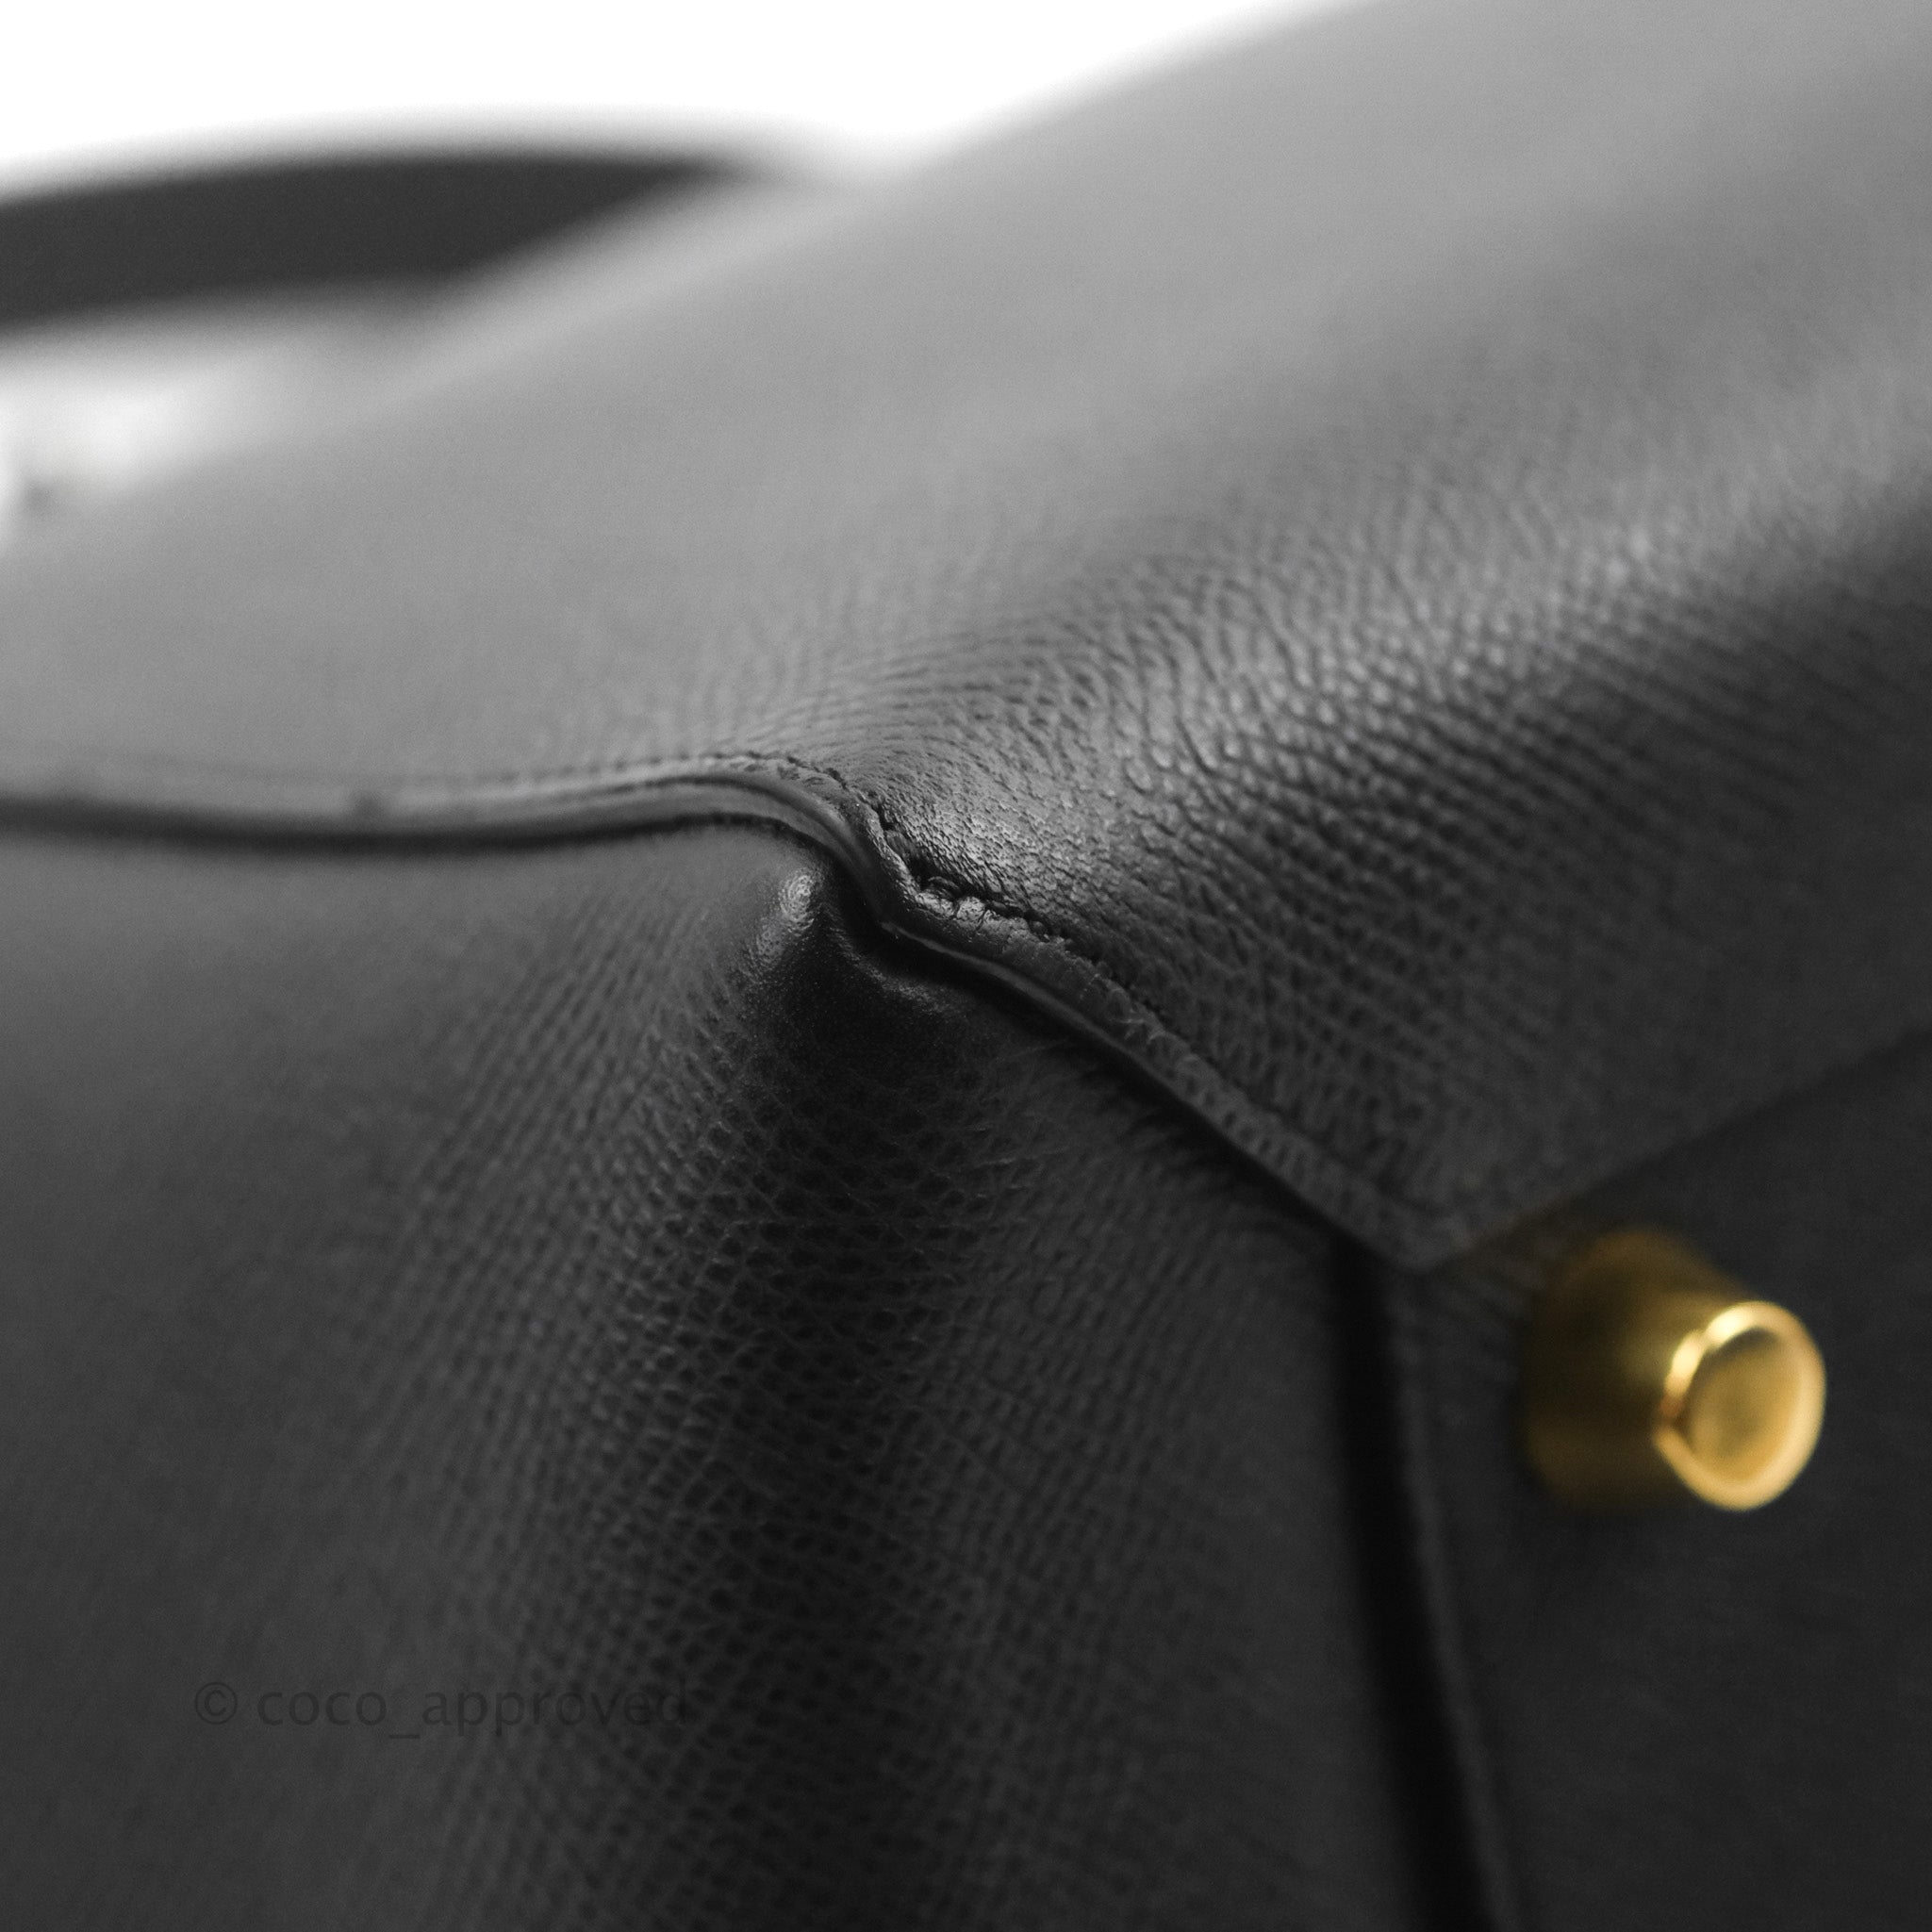 CELINE Grained Calfskin Mini Belt Bag Black 1221645